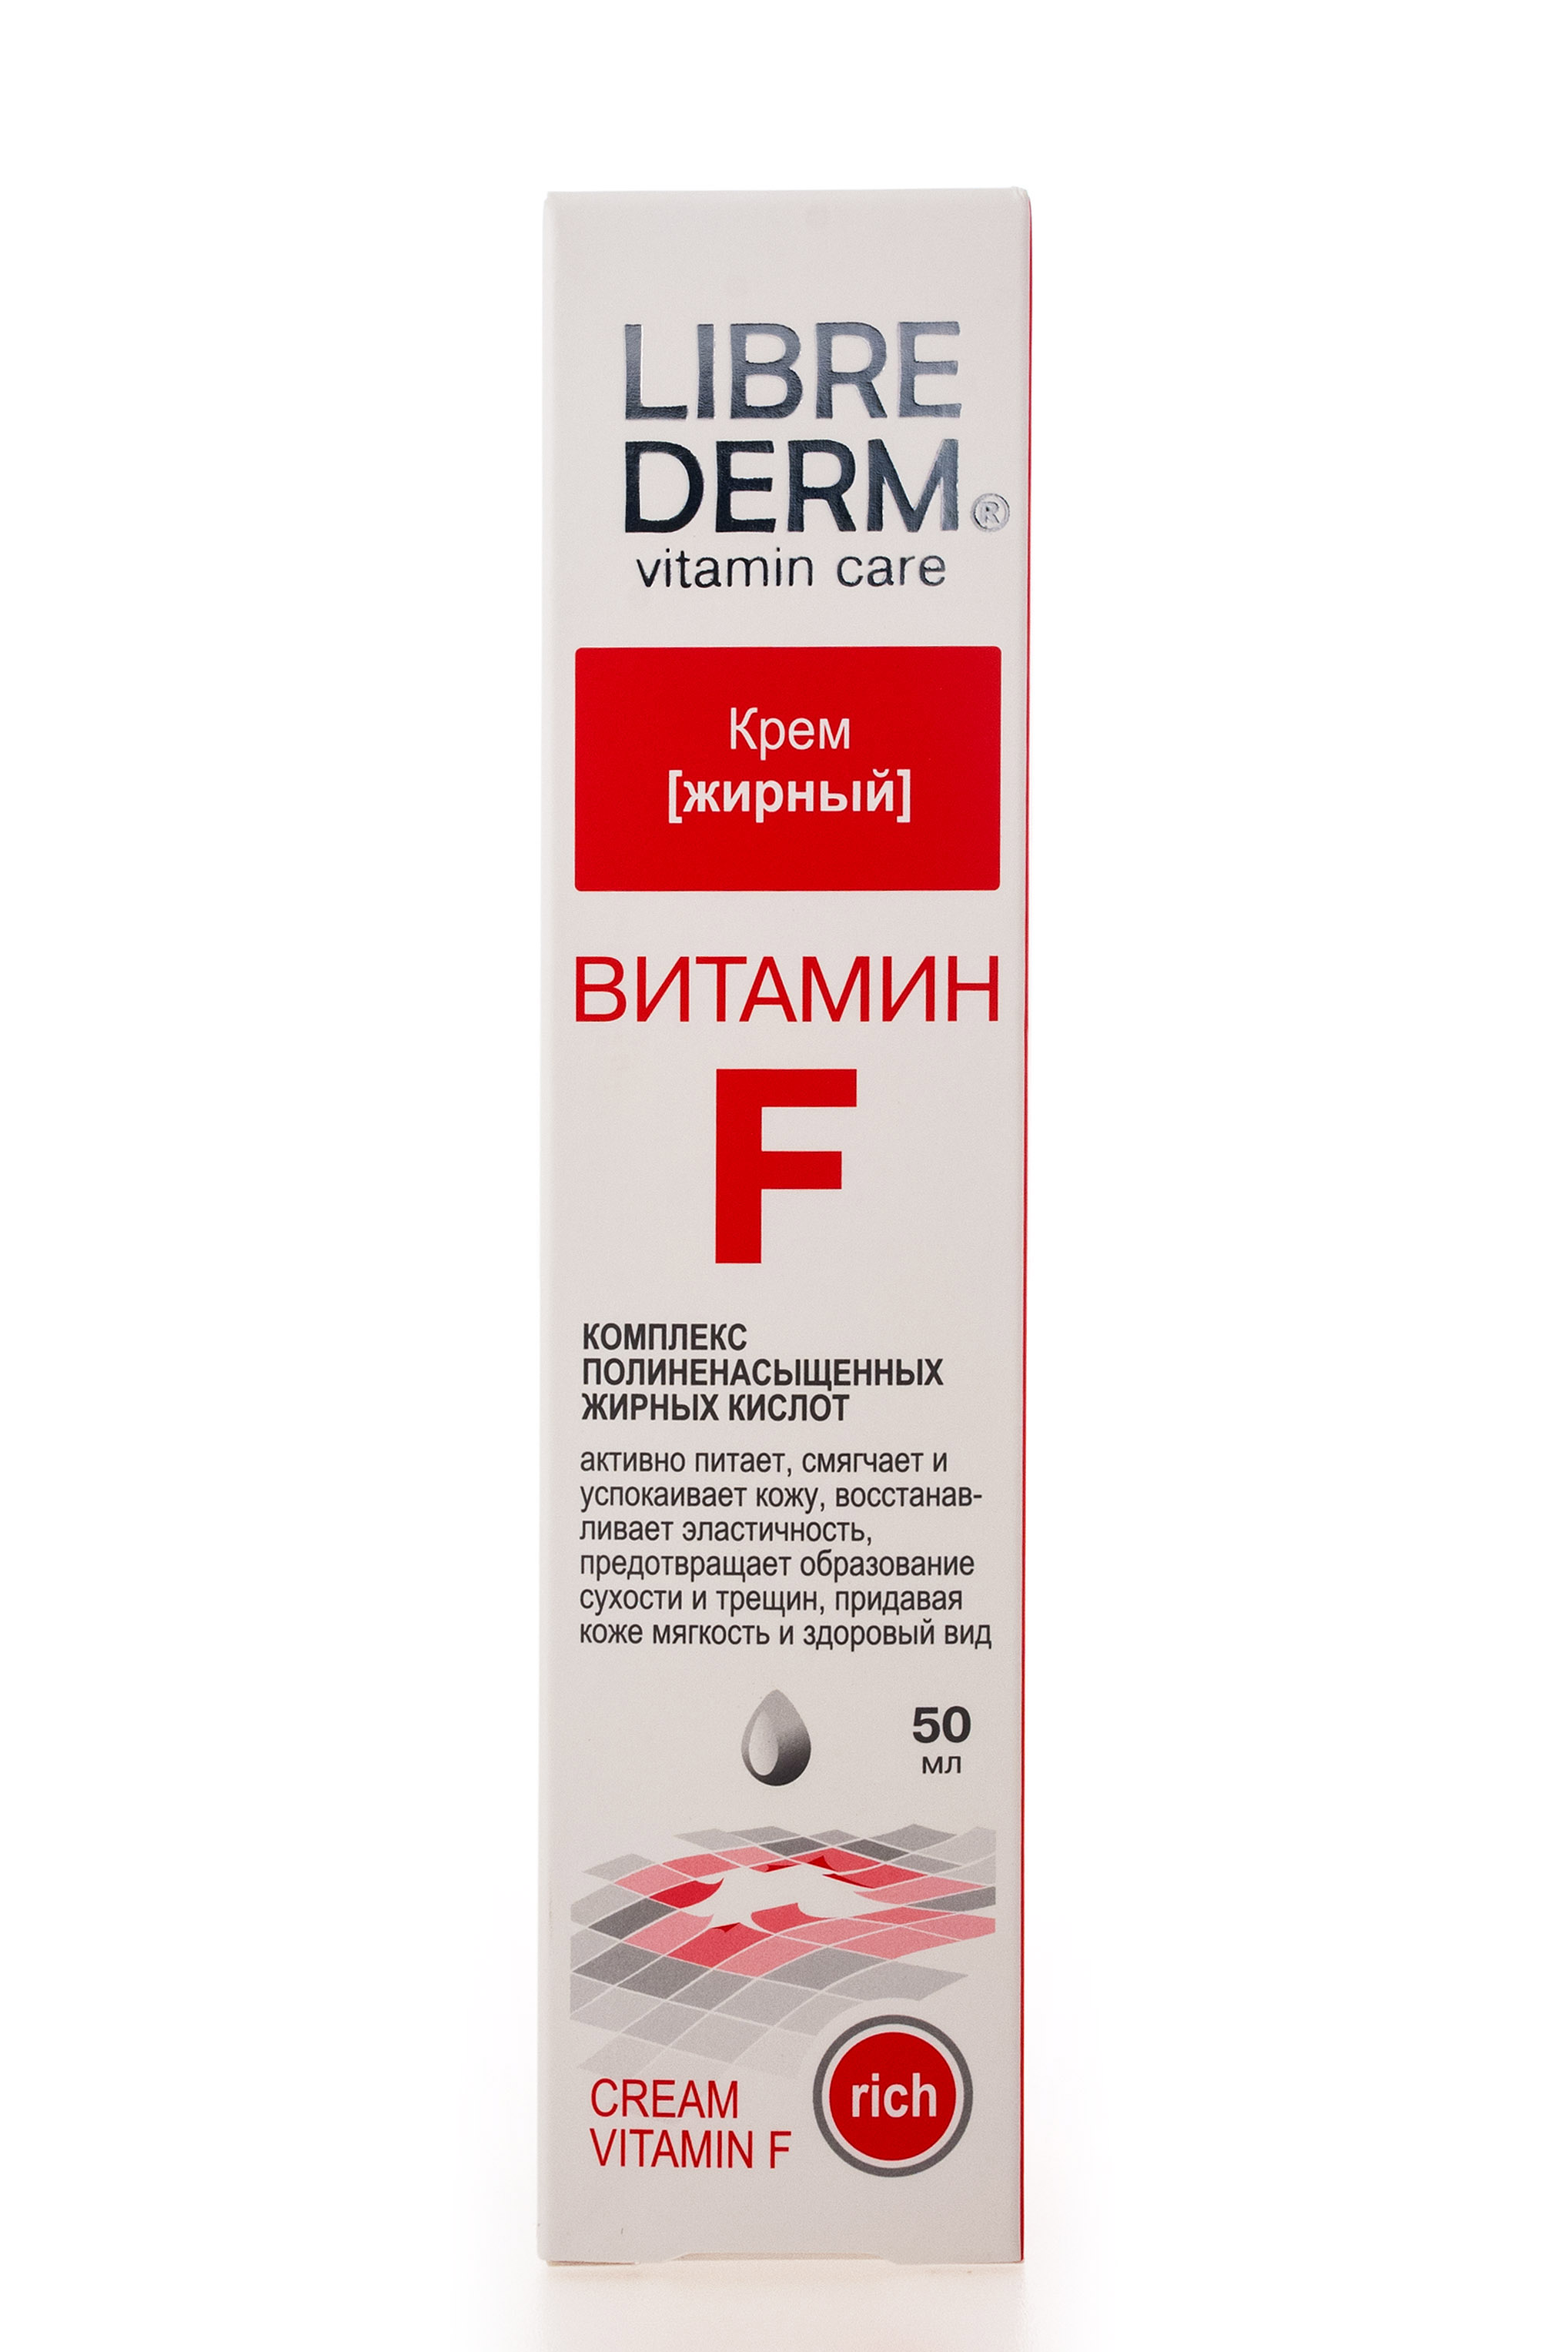 Librederm Крем жирный для очень сухой и чувствительной кожи, 50 мл (Librederm, Витамин F) витамин f крем librederm жирный 50 мл